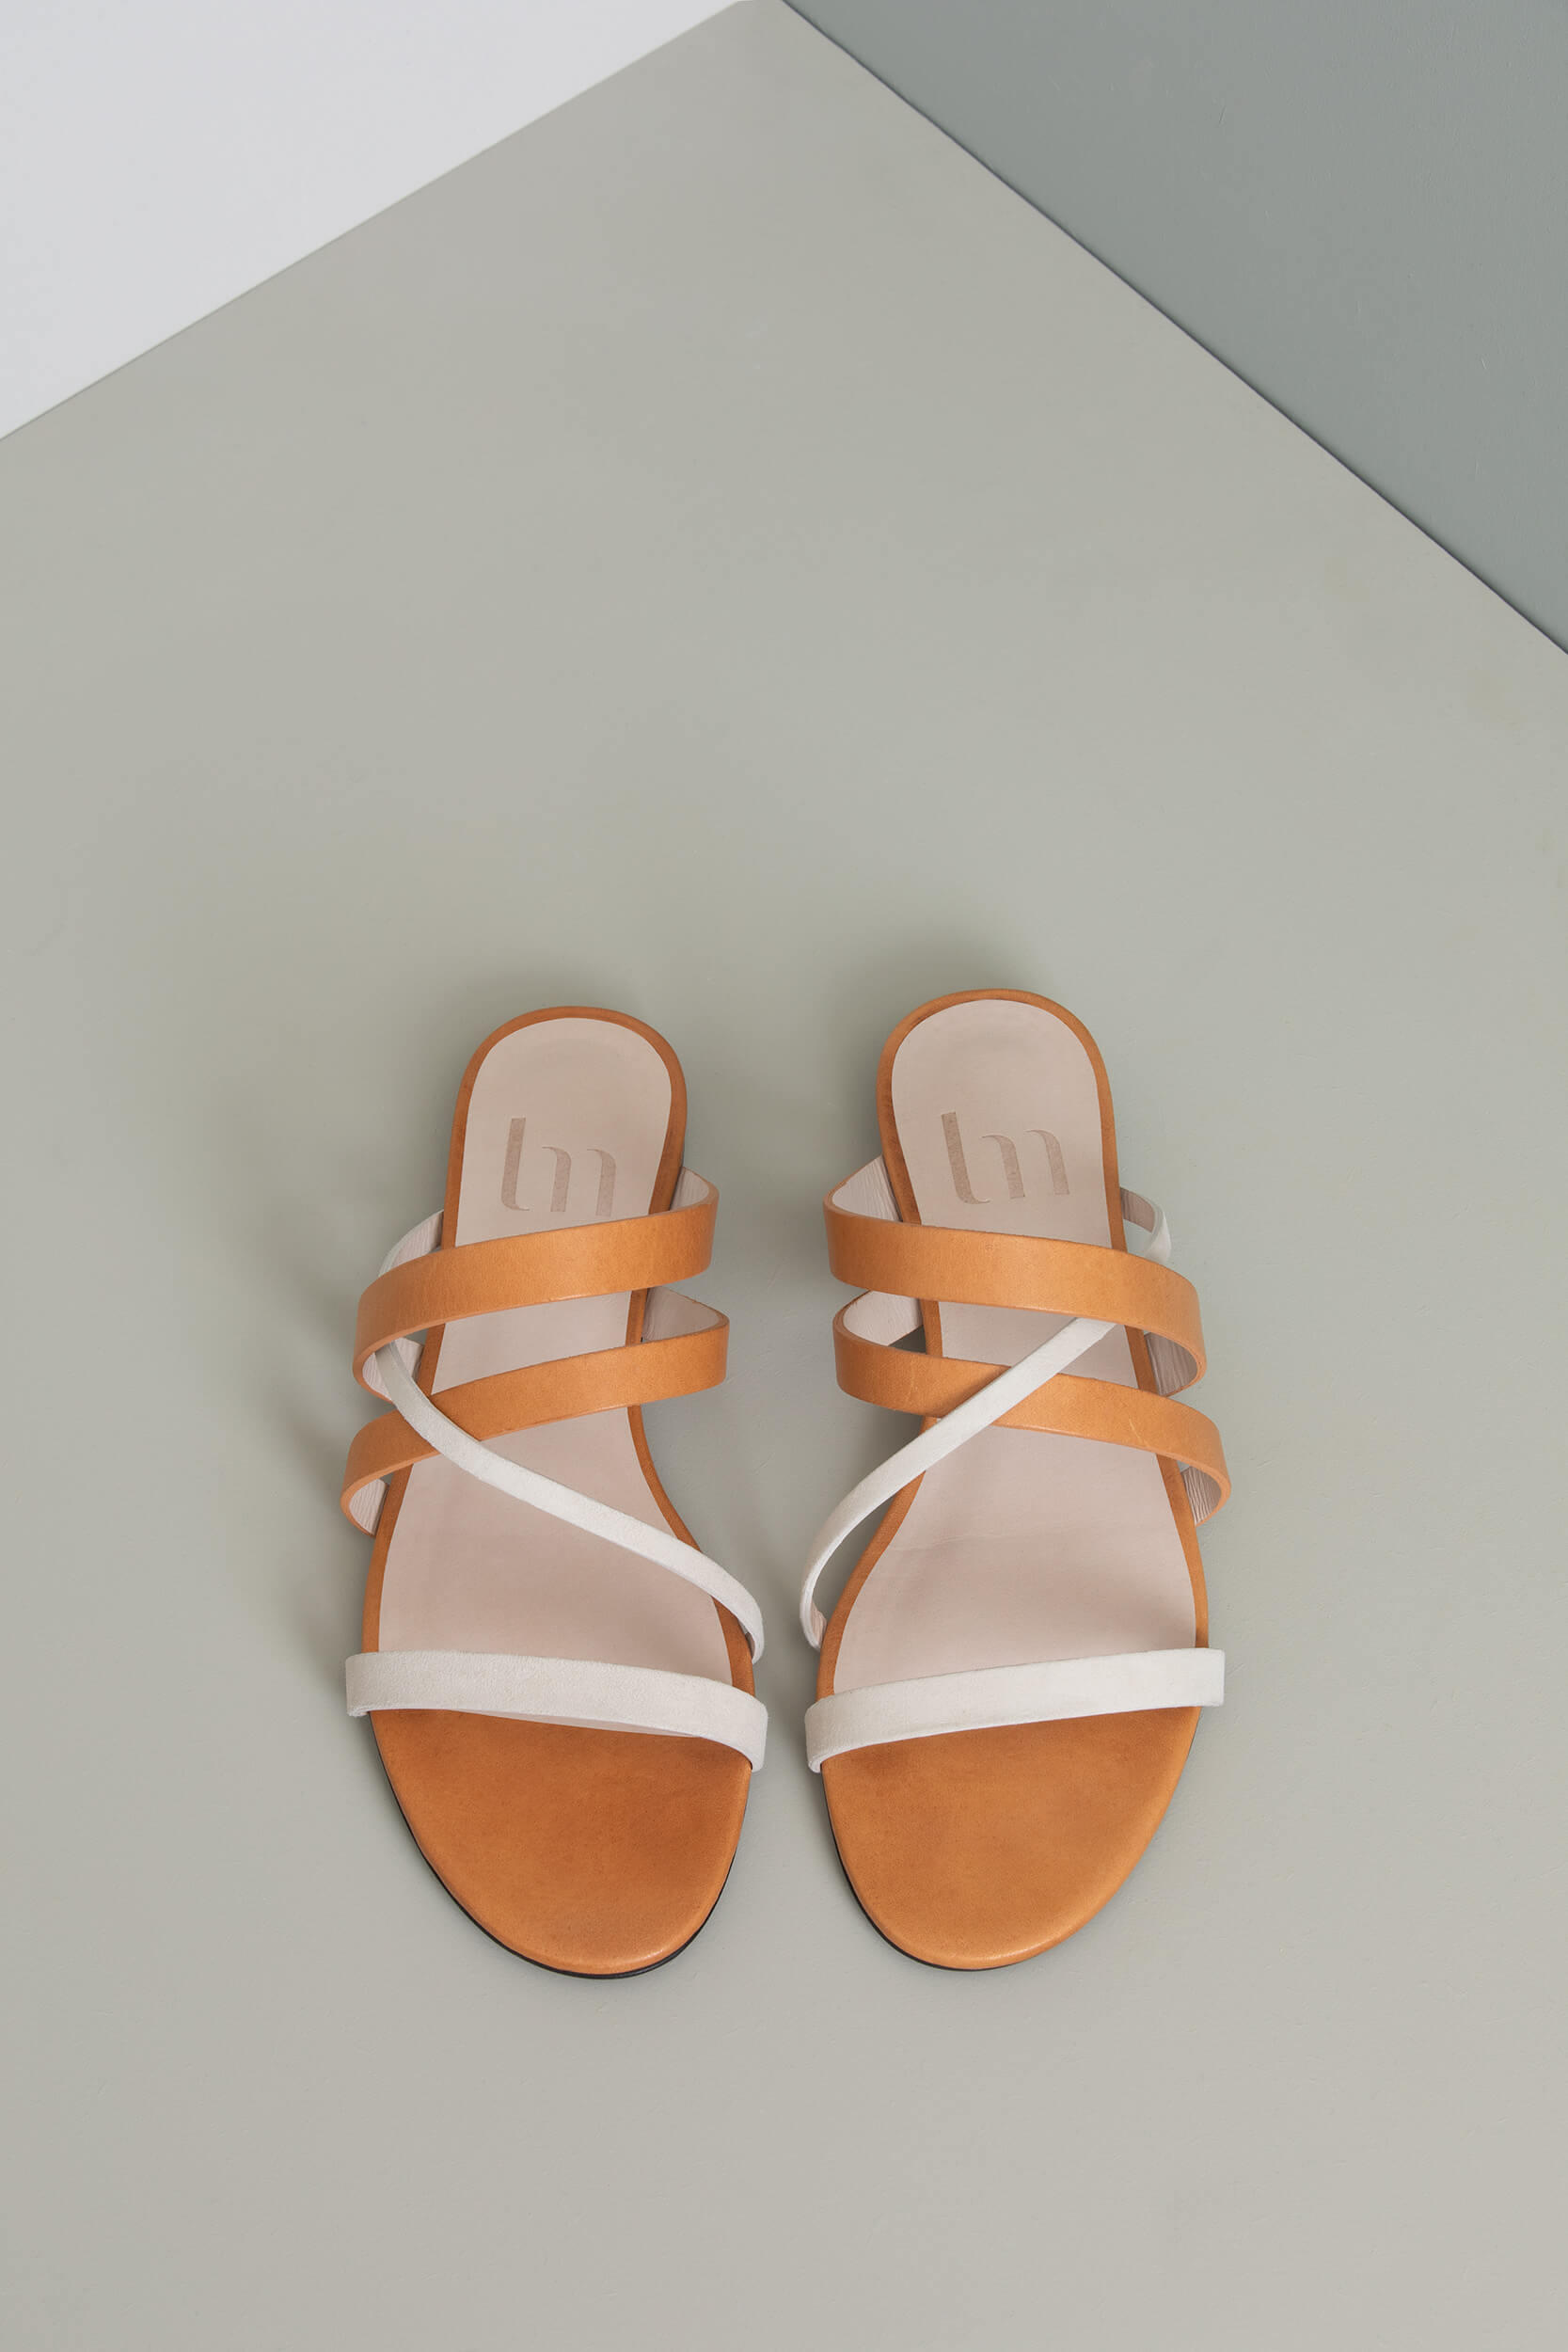 Sandale plate de 0,5 cm - Une sandale estivale aux lignes simples et pures. Une Edition Signature créée par la designer Charlotte Sauvat. La Ligne Numérotée.